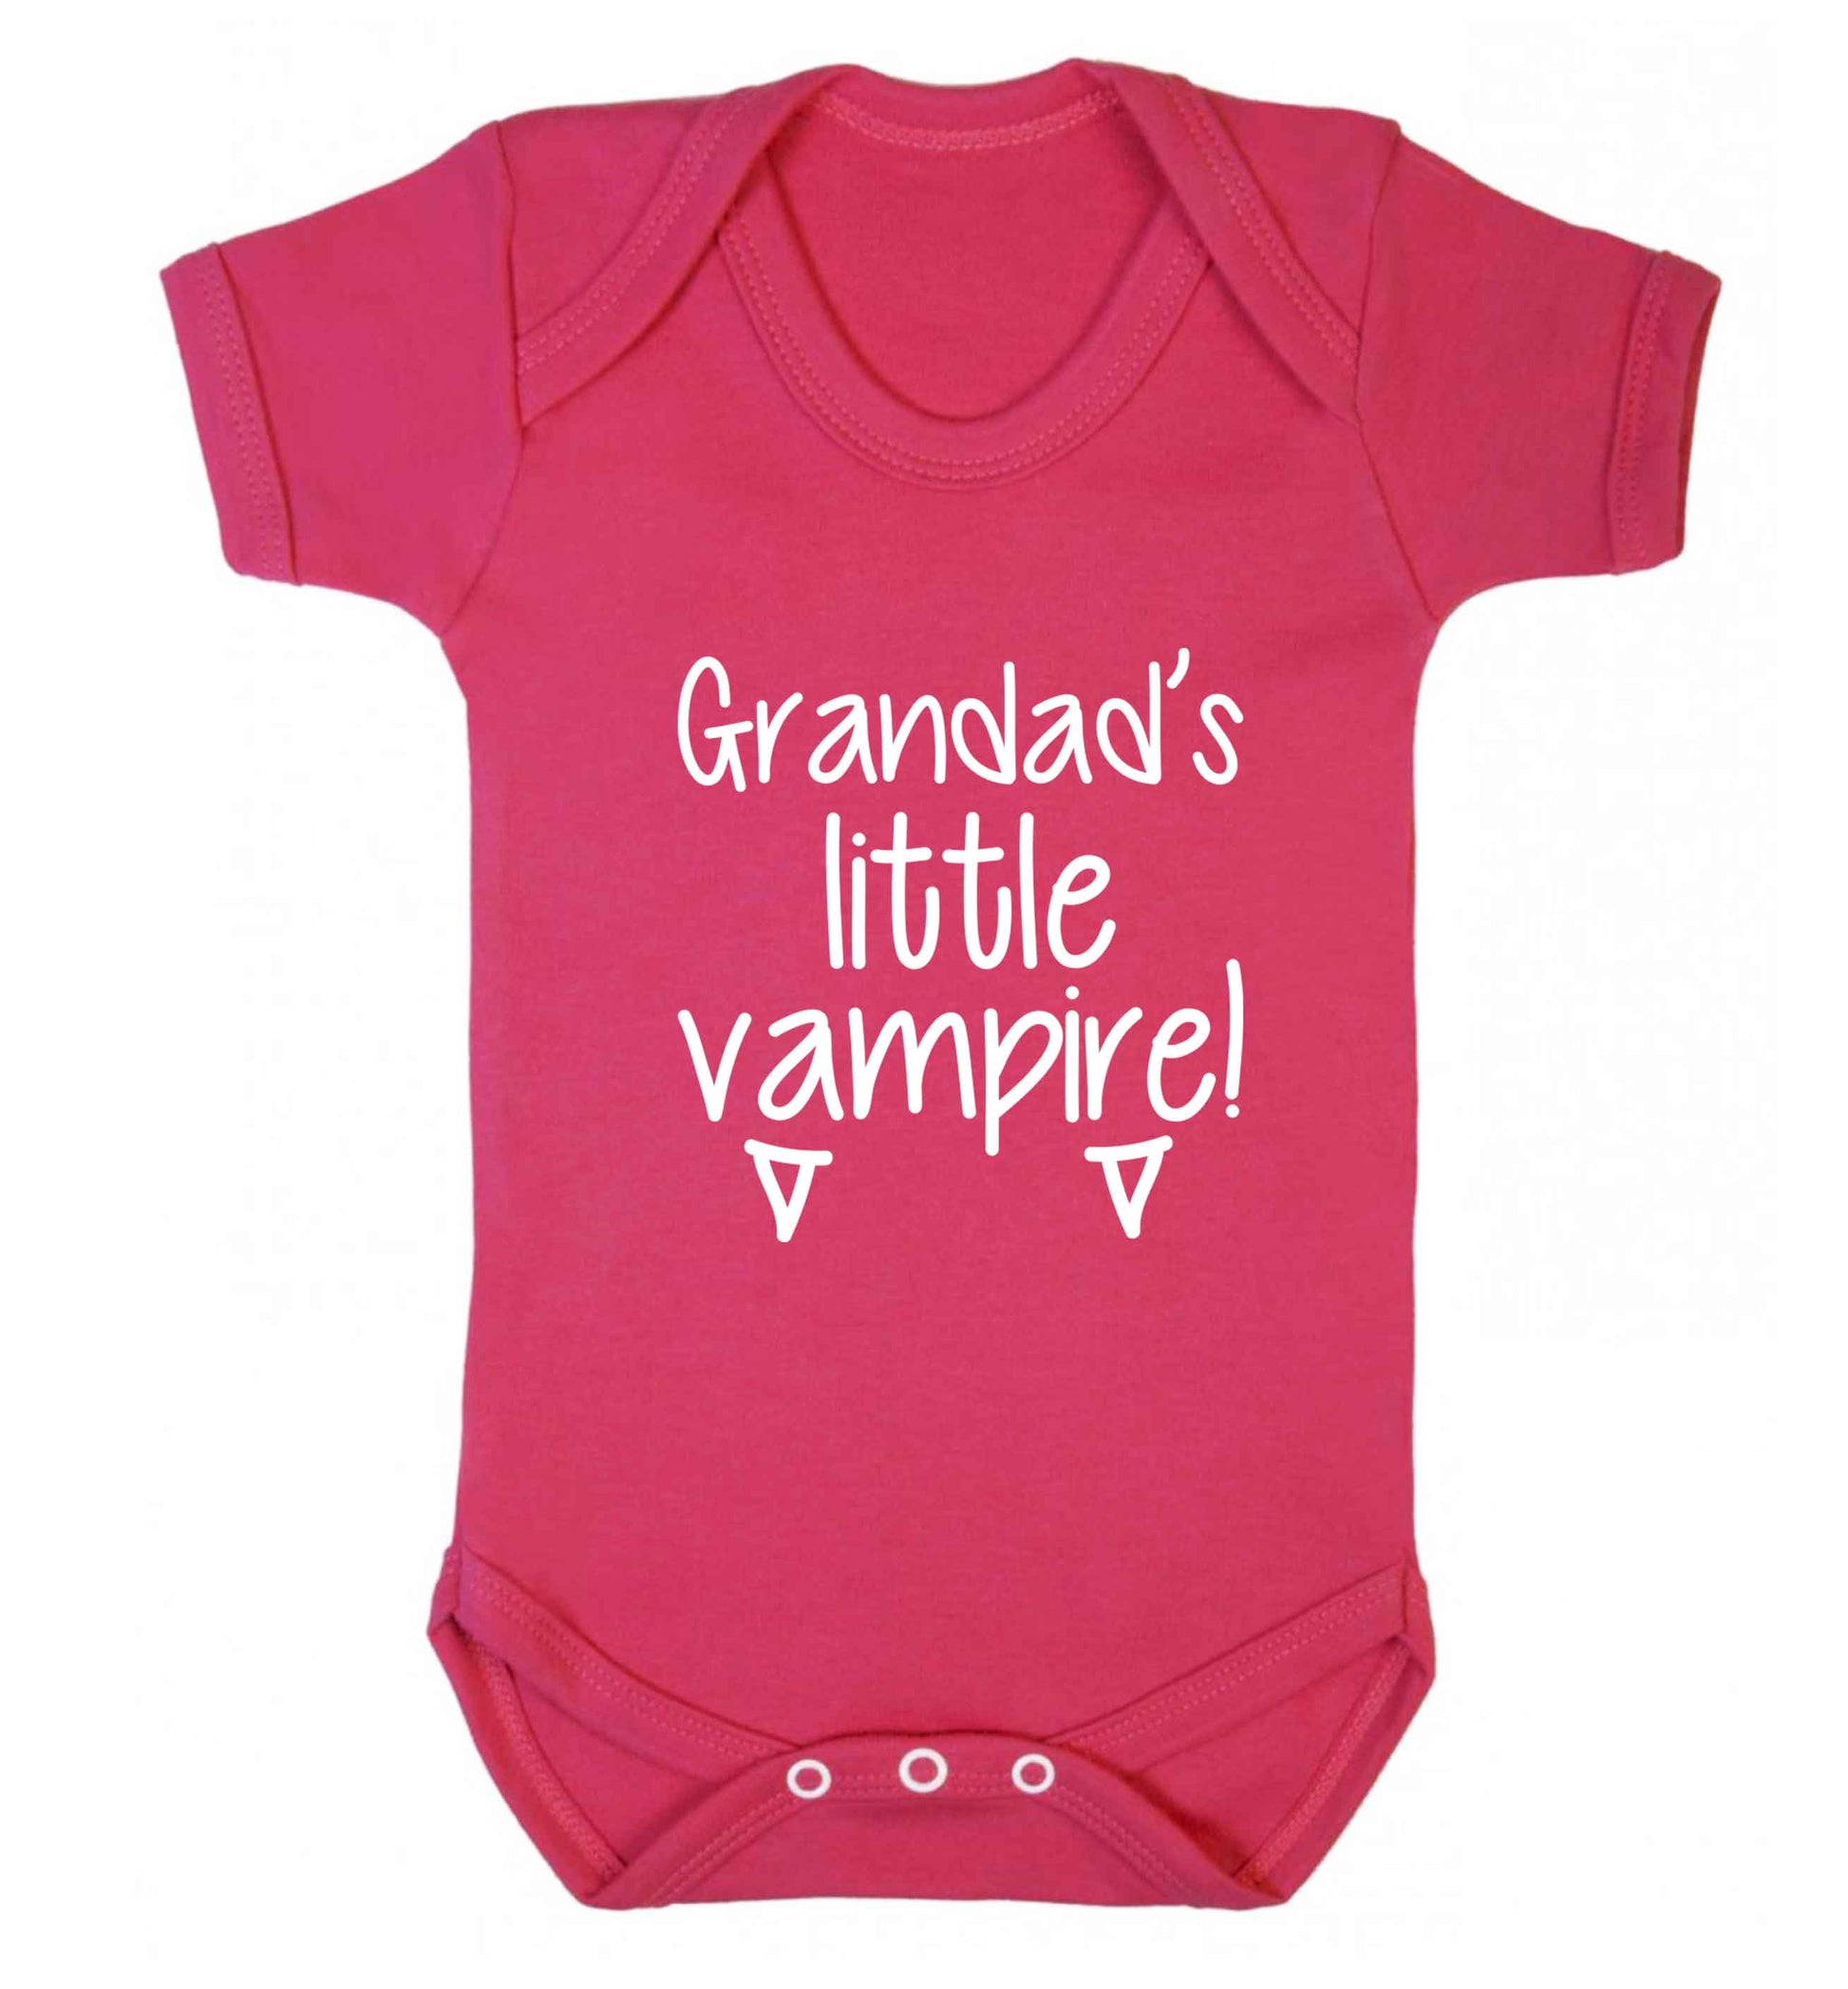 Grandad's little vampire baby vest dark pink 18-24 months